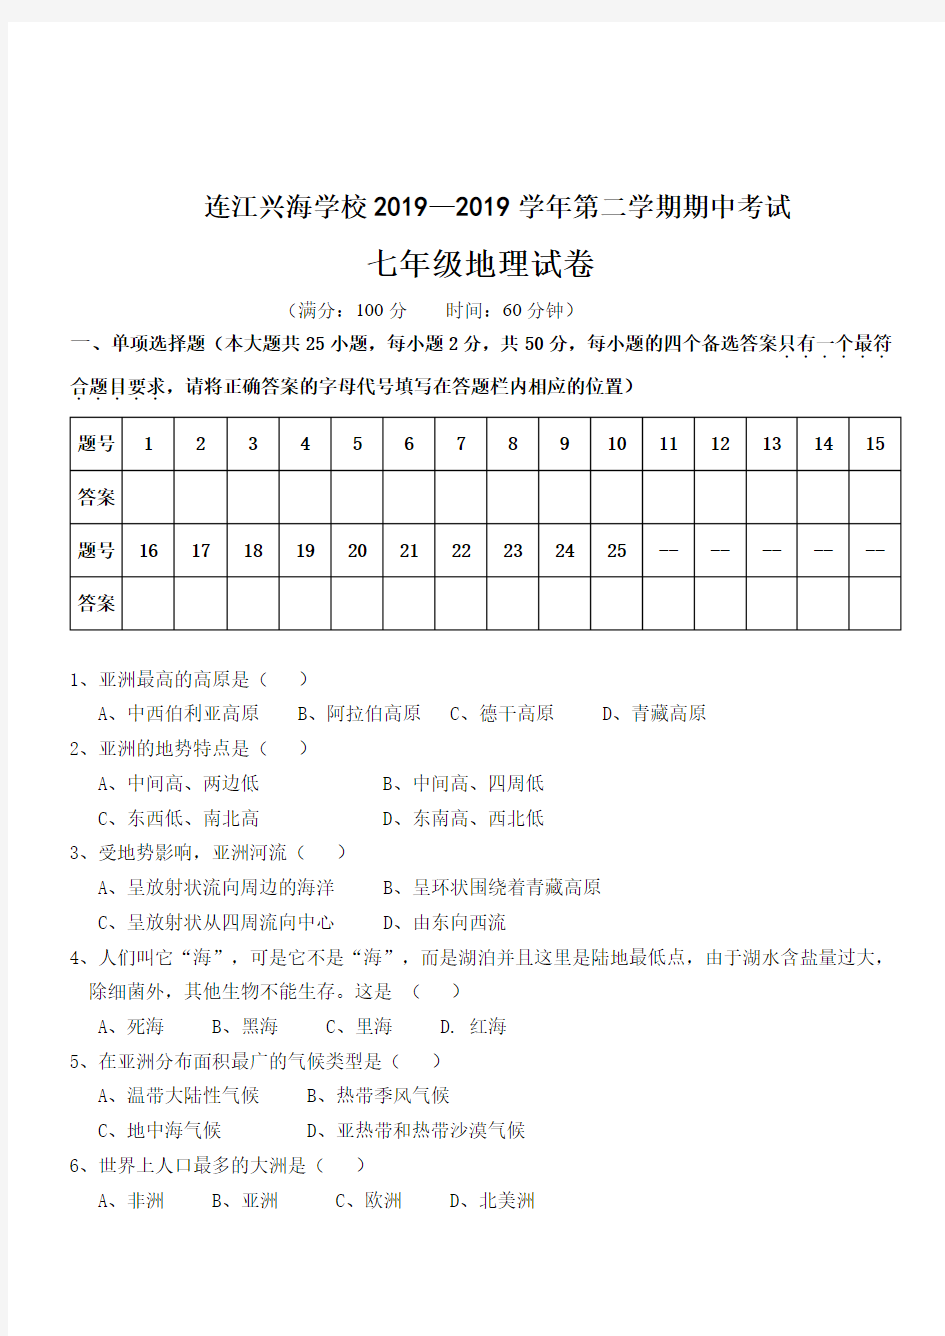 连江兴海学校2020—2019学年度(下)期中考试七年级地理试卷、答题卡、答案